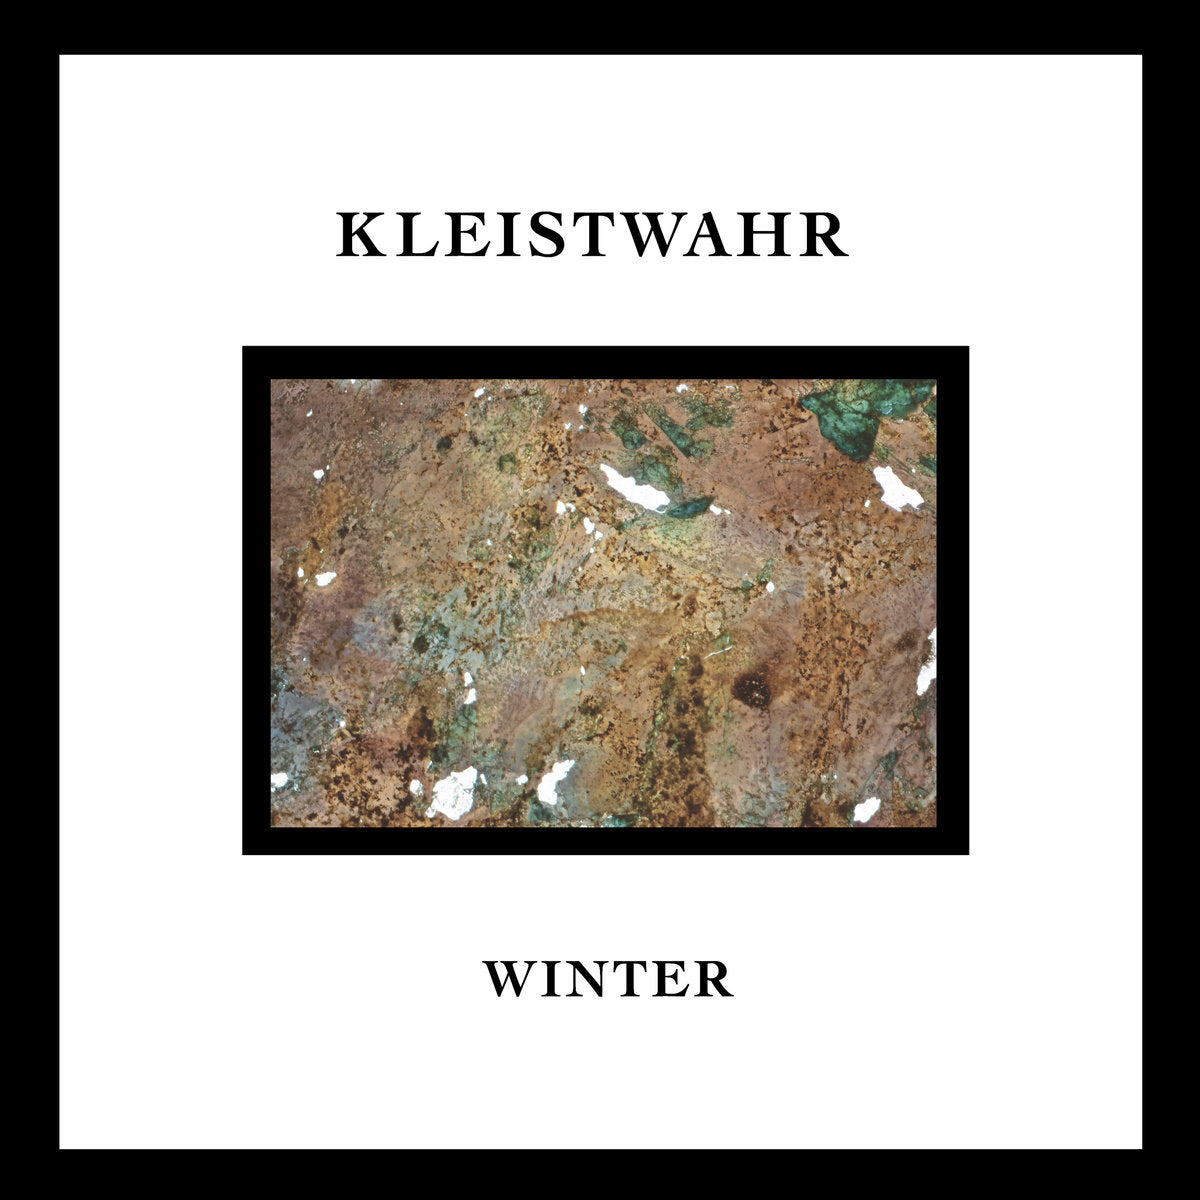 Kleistwahr - Winter LP